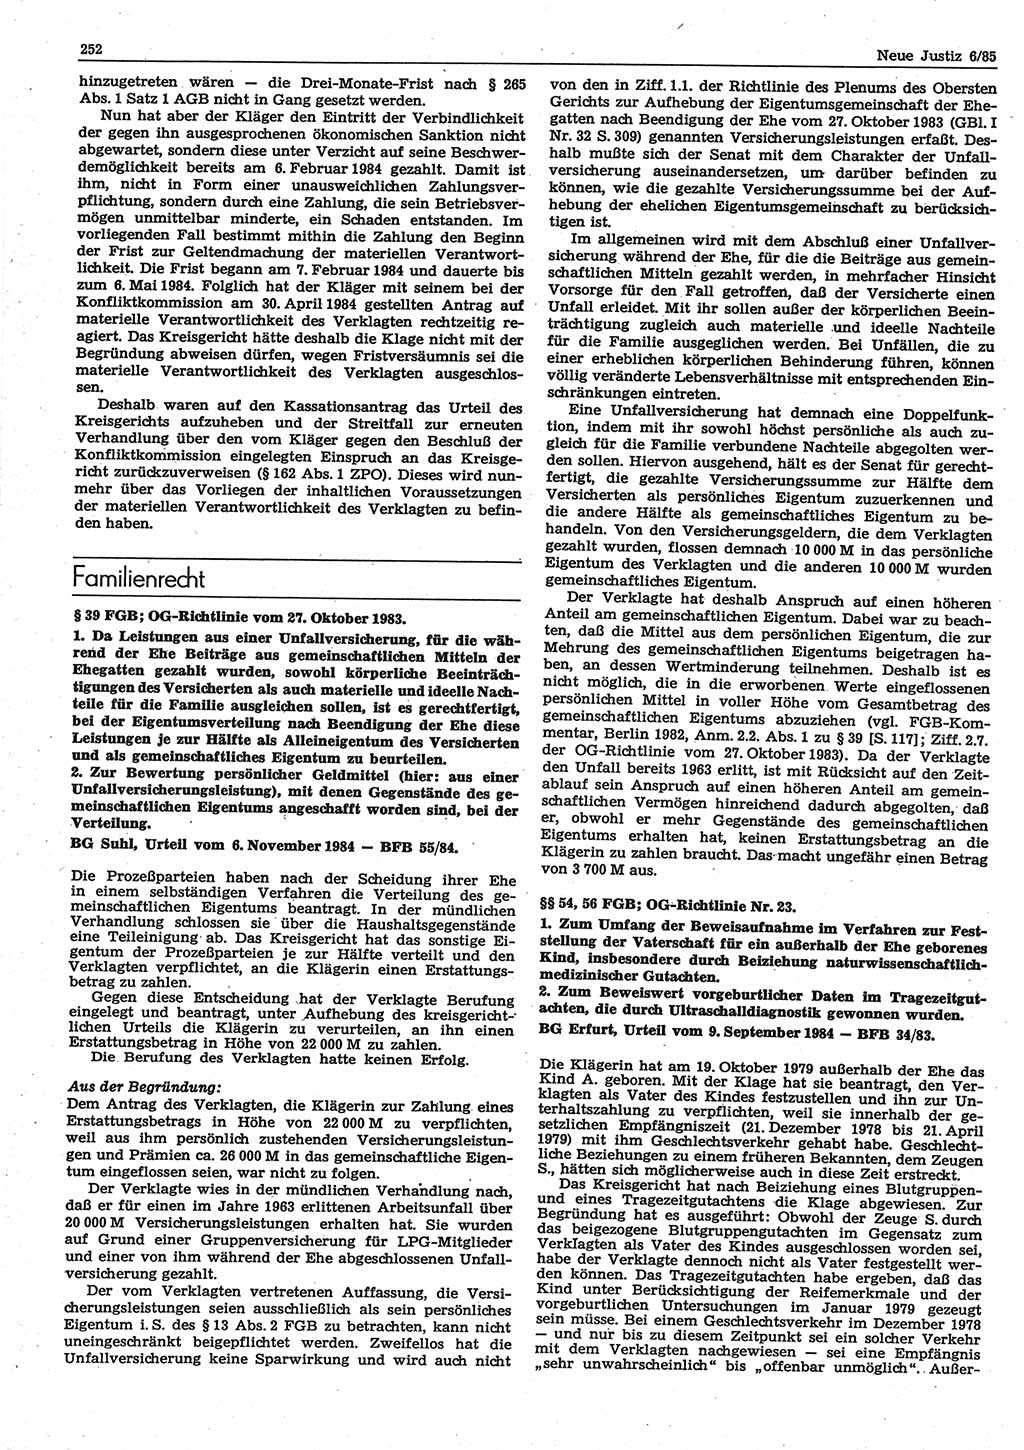 Neue Justiz (NJ), Zeitschrift für sozialistisches Recht und Gesetzlichkeit [Deutsche Demokratische Republik (DDR)], 39. Jahrgang 1985, Seite 252 (NJ DDR 1985, S. 252)